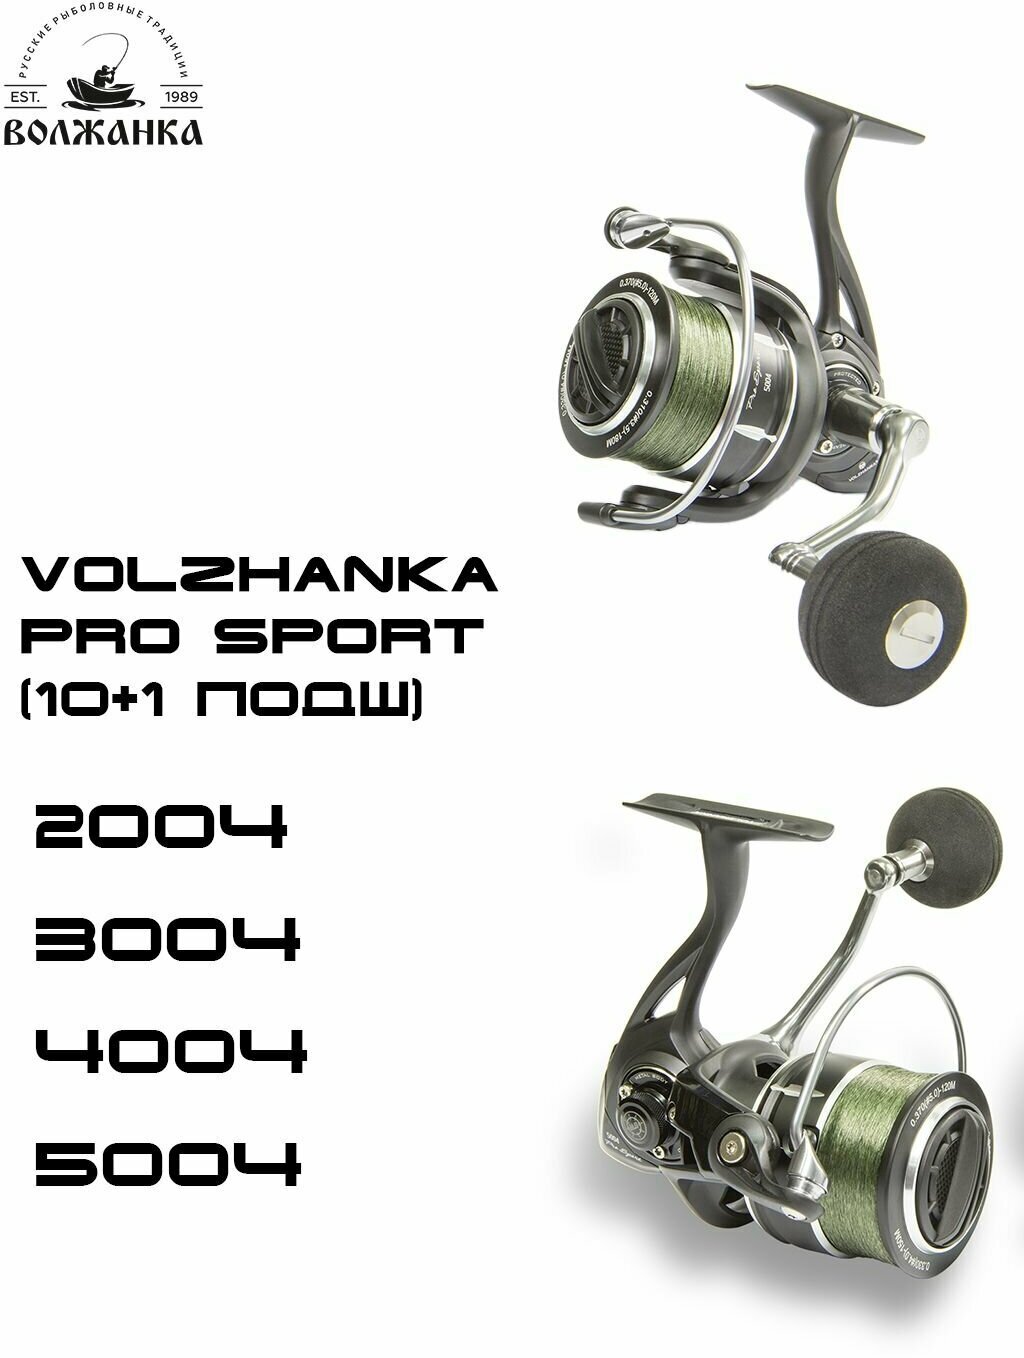 Катушка рыболовная безынерционная Volzhanka Pro Sport 5004 /Катушка для рыбалки Волжанка Про Спорт